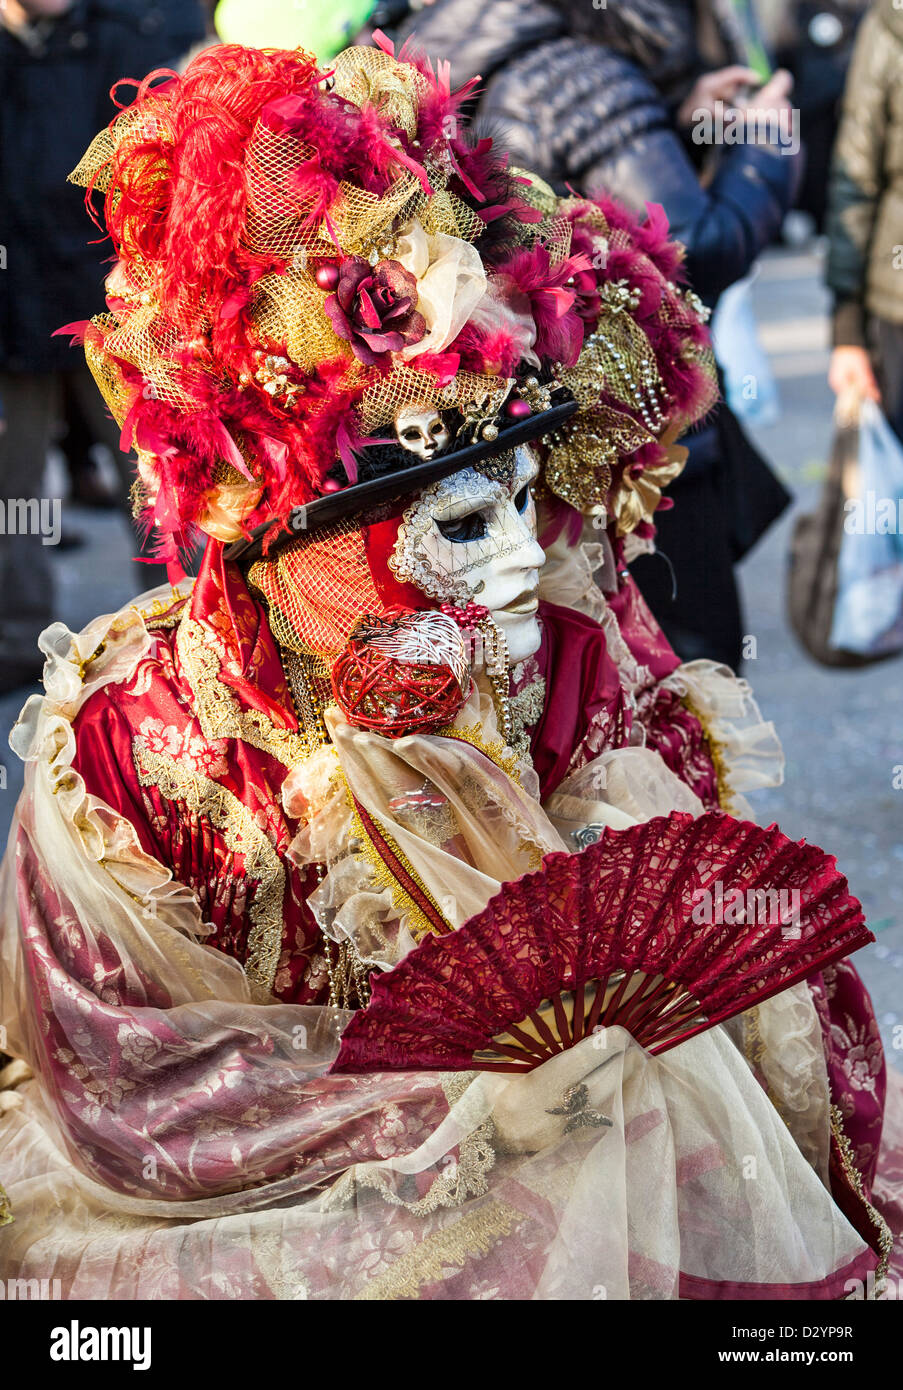 Ein paar traditionelle Masken und Kostüme tragen durchführen eine Liebesszene in Piazza San Marco in Venedig Karneval Tagen. Stockfoto